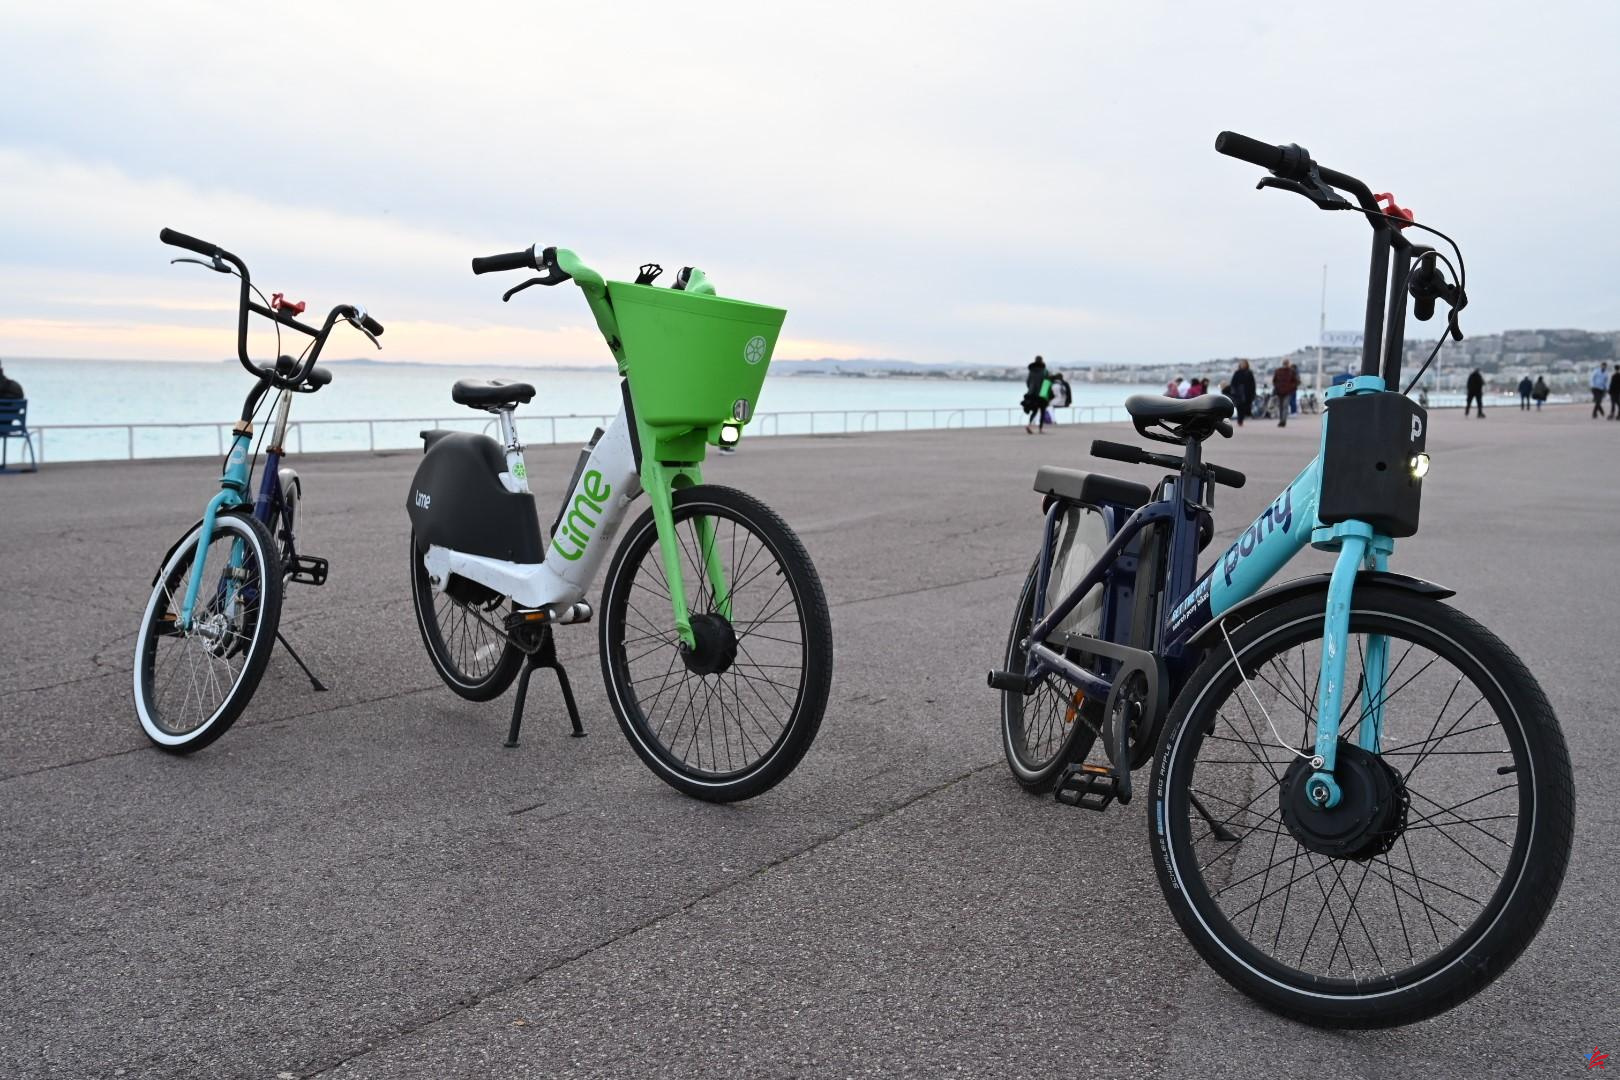 Apostando por la electricidad, la metrópoli de Niza apuesta por las bicicletas de autoservicio “Lime” y “Pony”